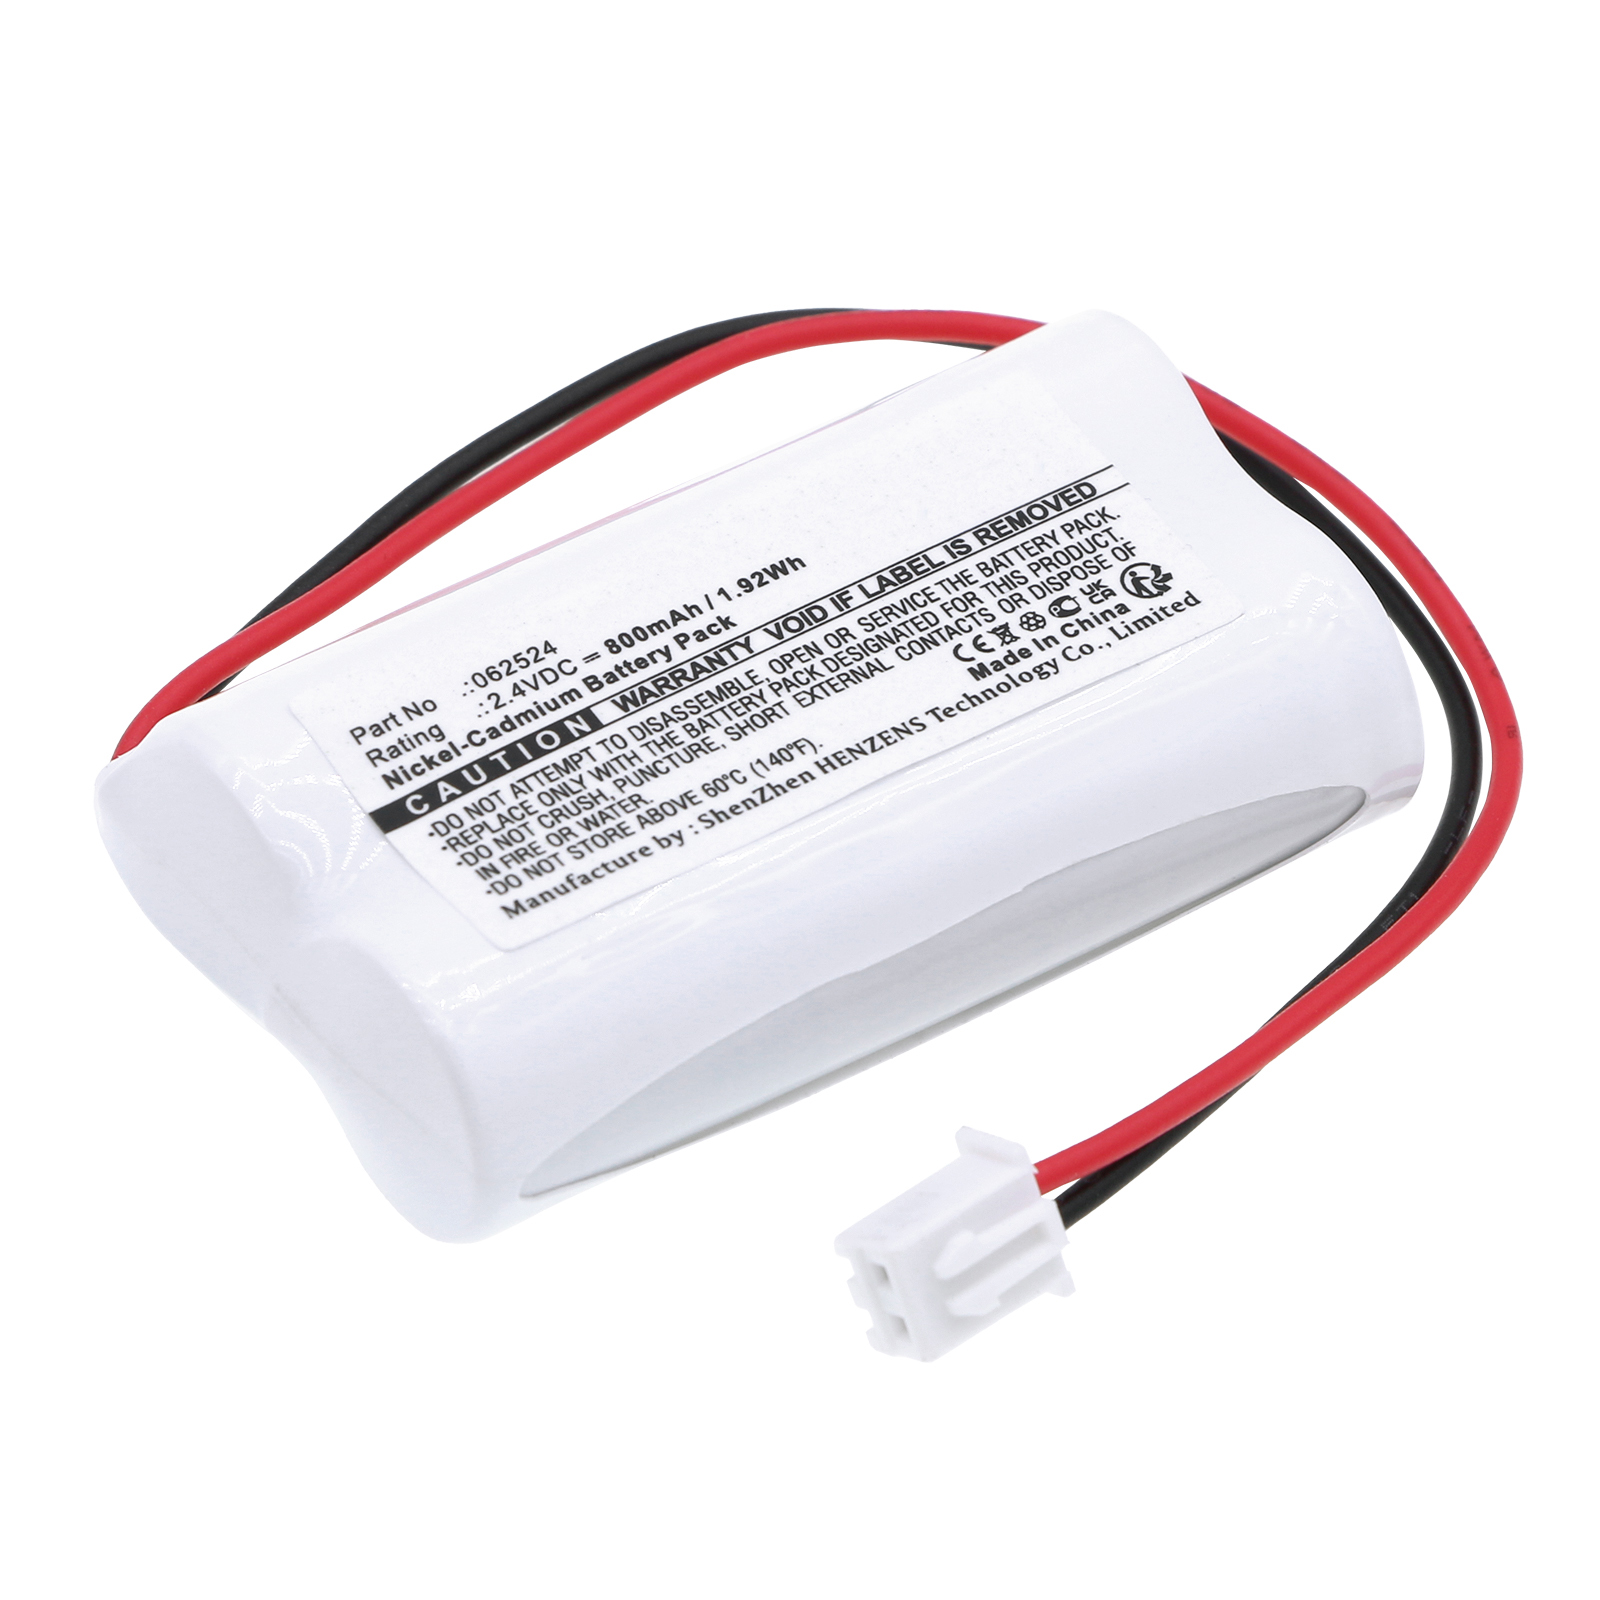 Synergy Digital Emergency Lighting Battery, Compatible with Legrand 061087 Emergency Lighting Battery (Ni-CD, 2.4V, 800mAh)